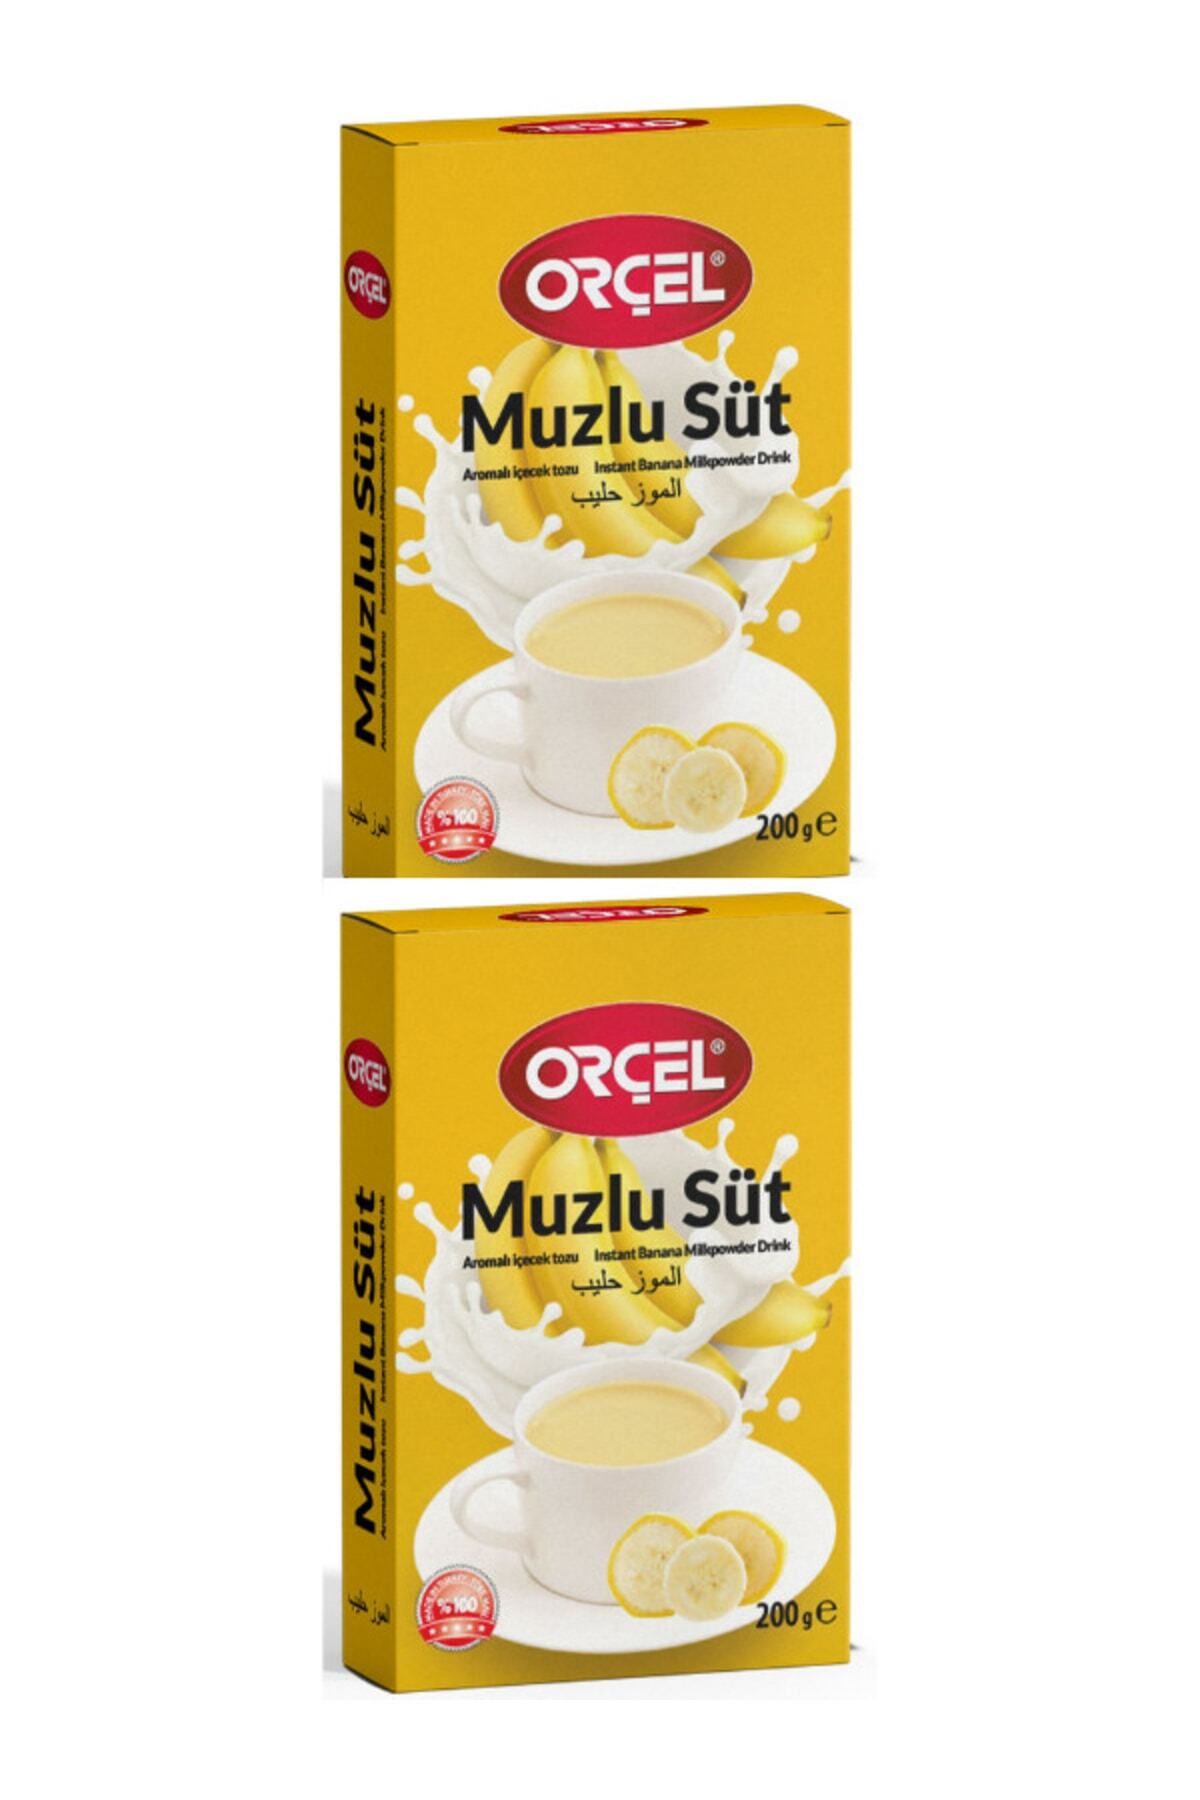 ORÇEL Muzlu Süt Aromalı Içecek Tozu Oralet Çay 2 X 200gr.